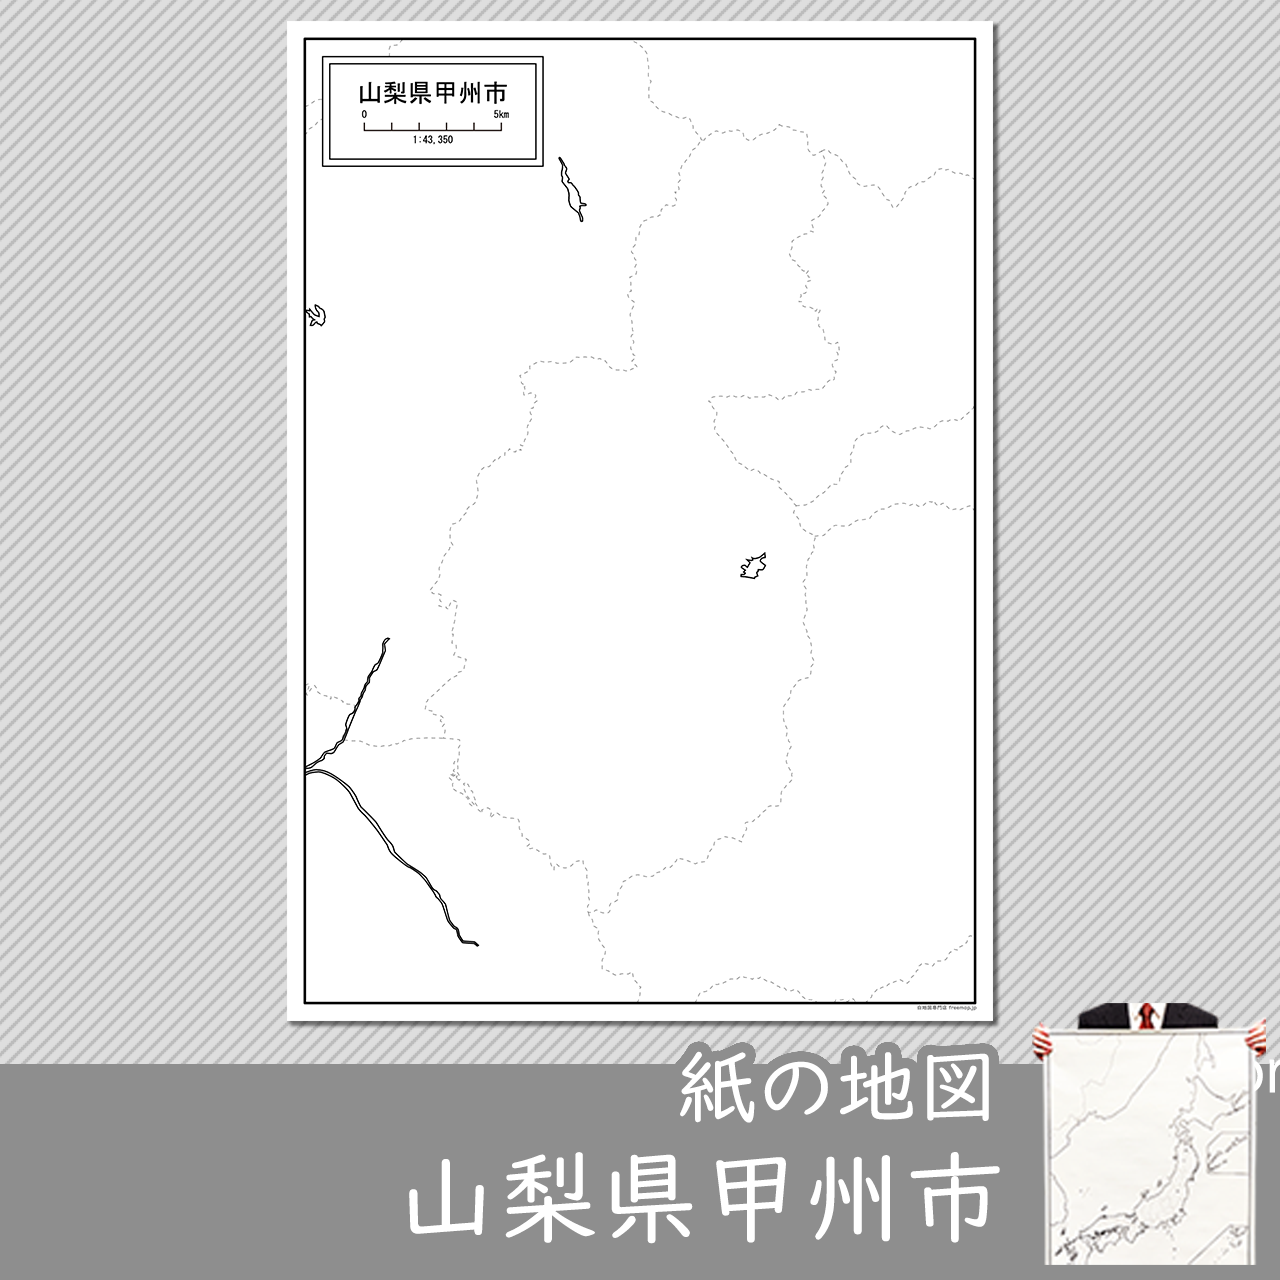 甲州市の紙の白地図のサムネイル